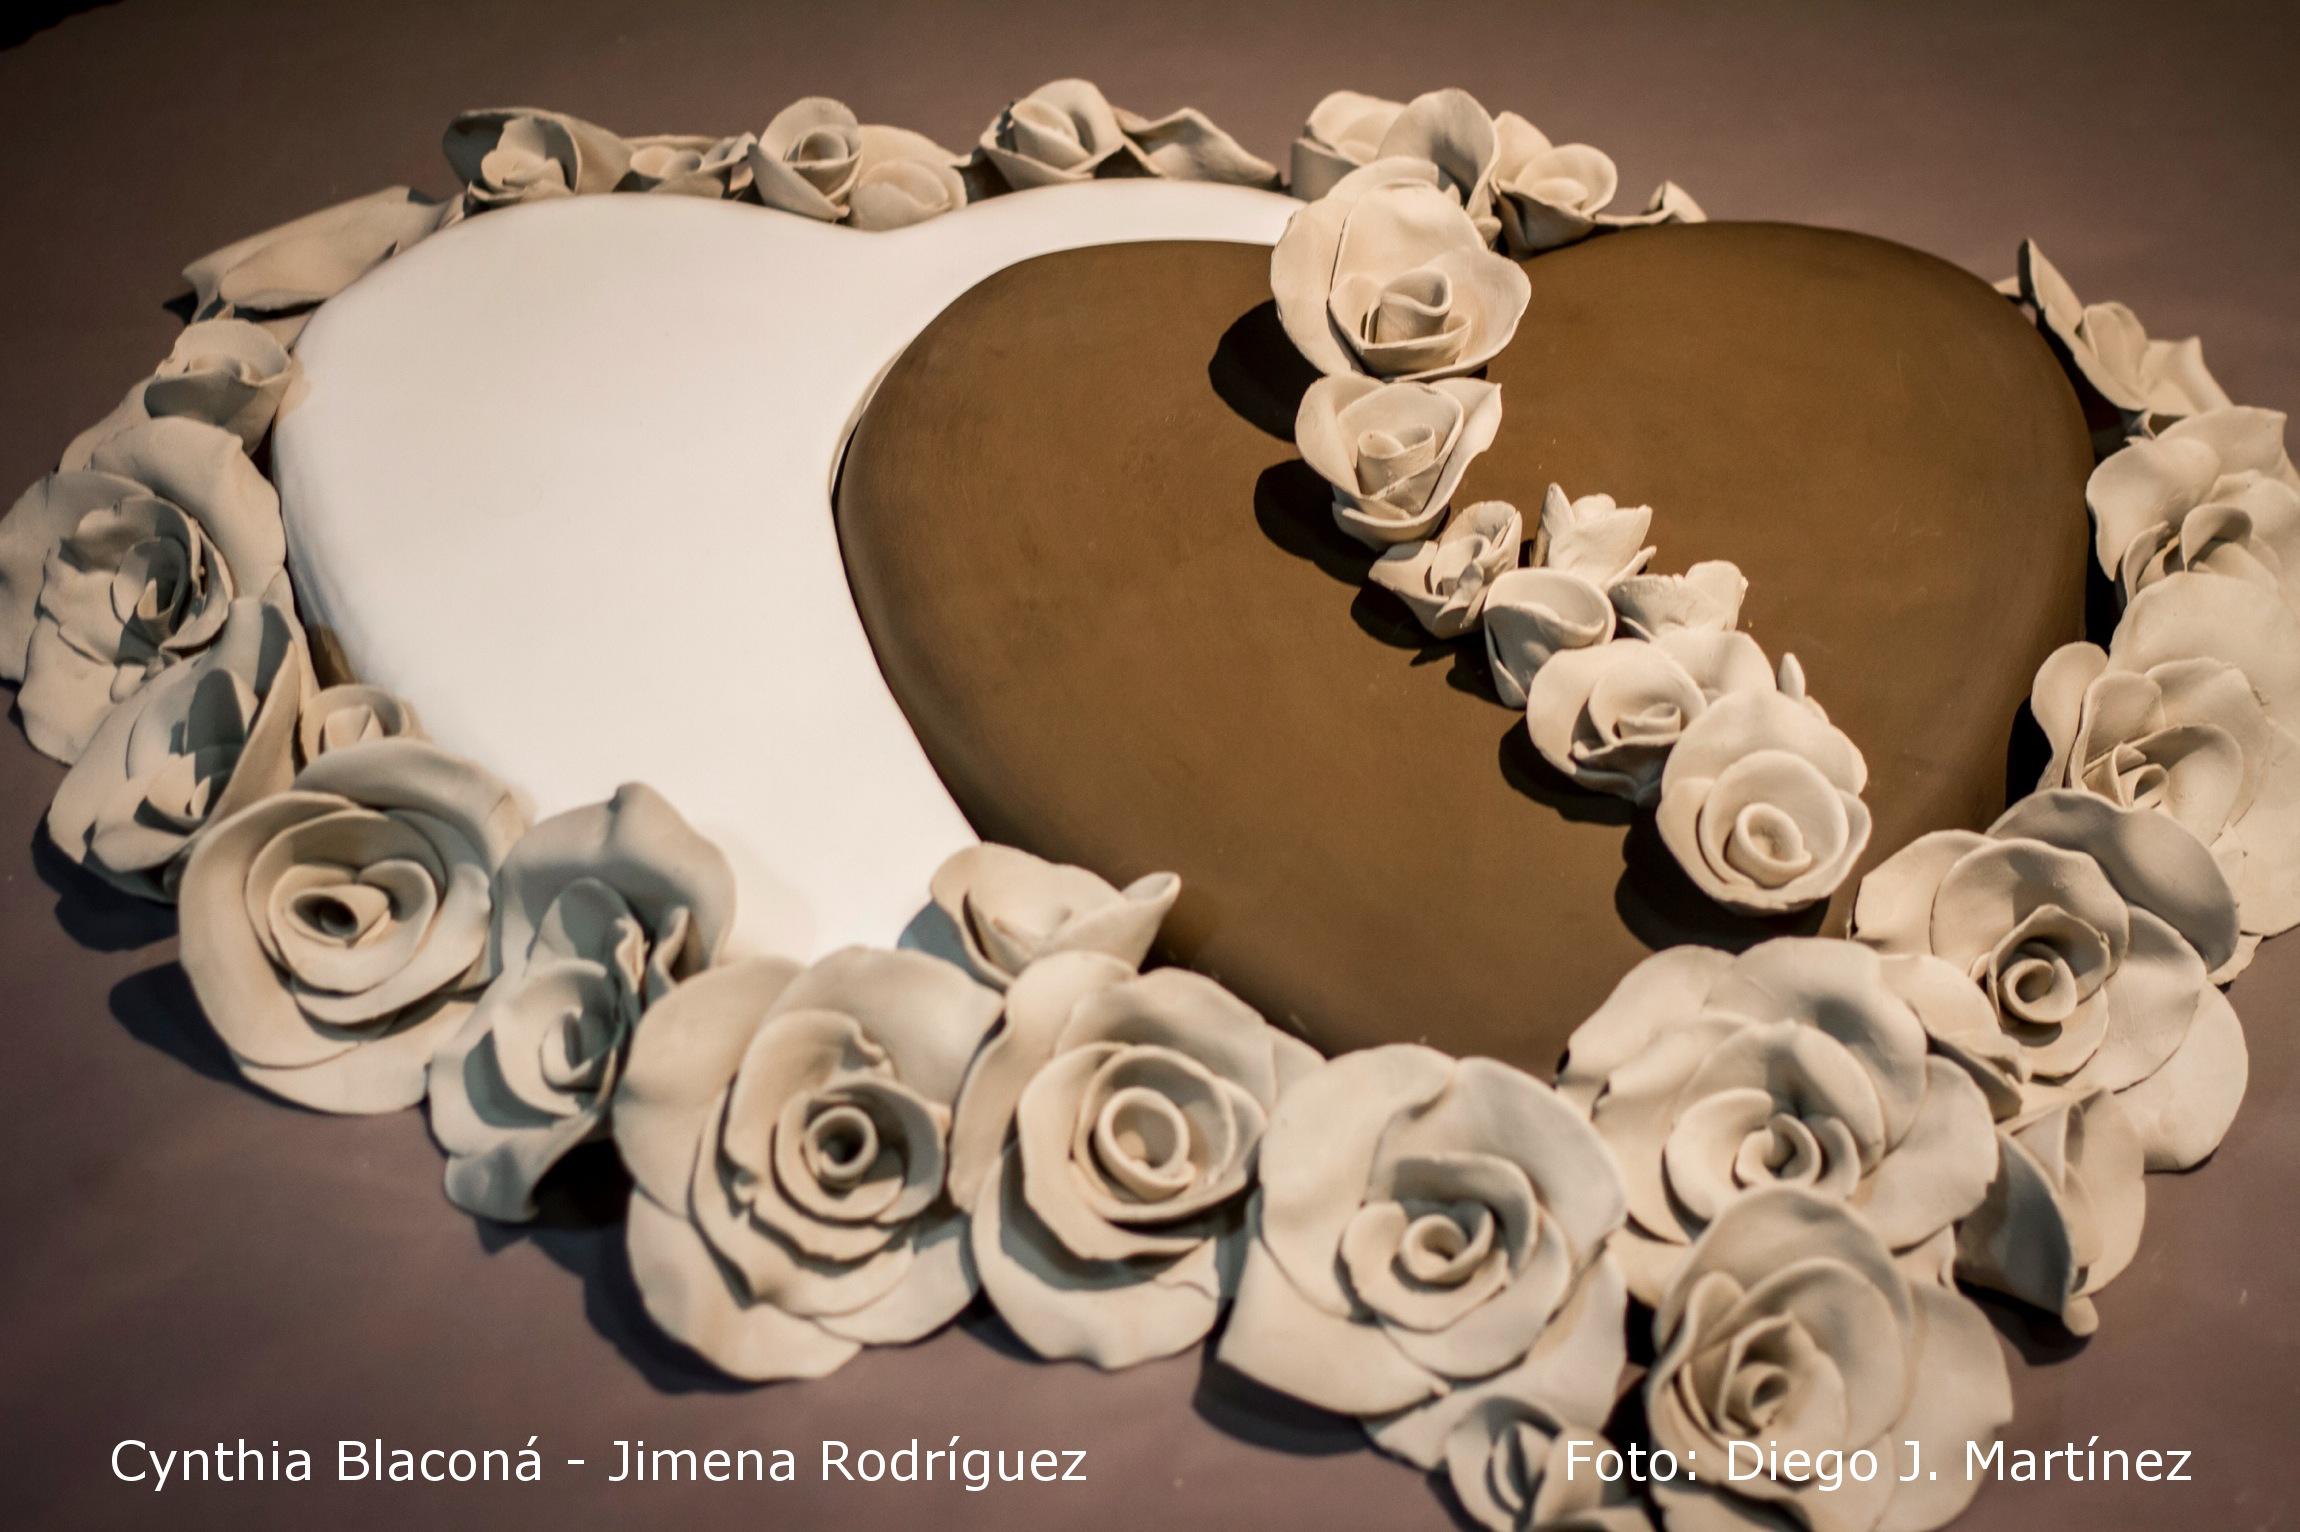 Unas cuantas creencias desafortunadas. Cynthia Blaconá – Jimena Rodríguez (obra cerámica). (2015) - Cynthia Blacona